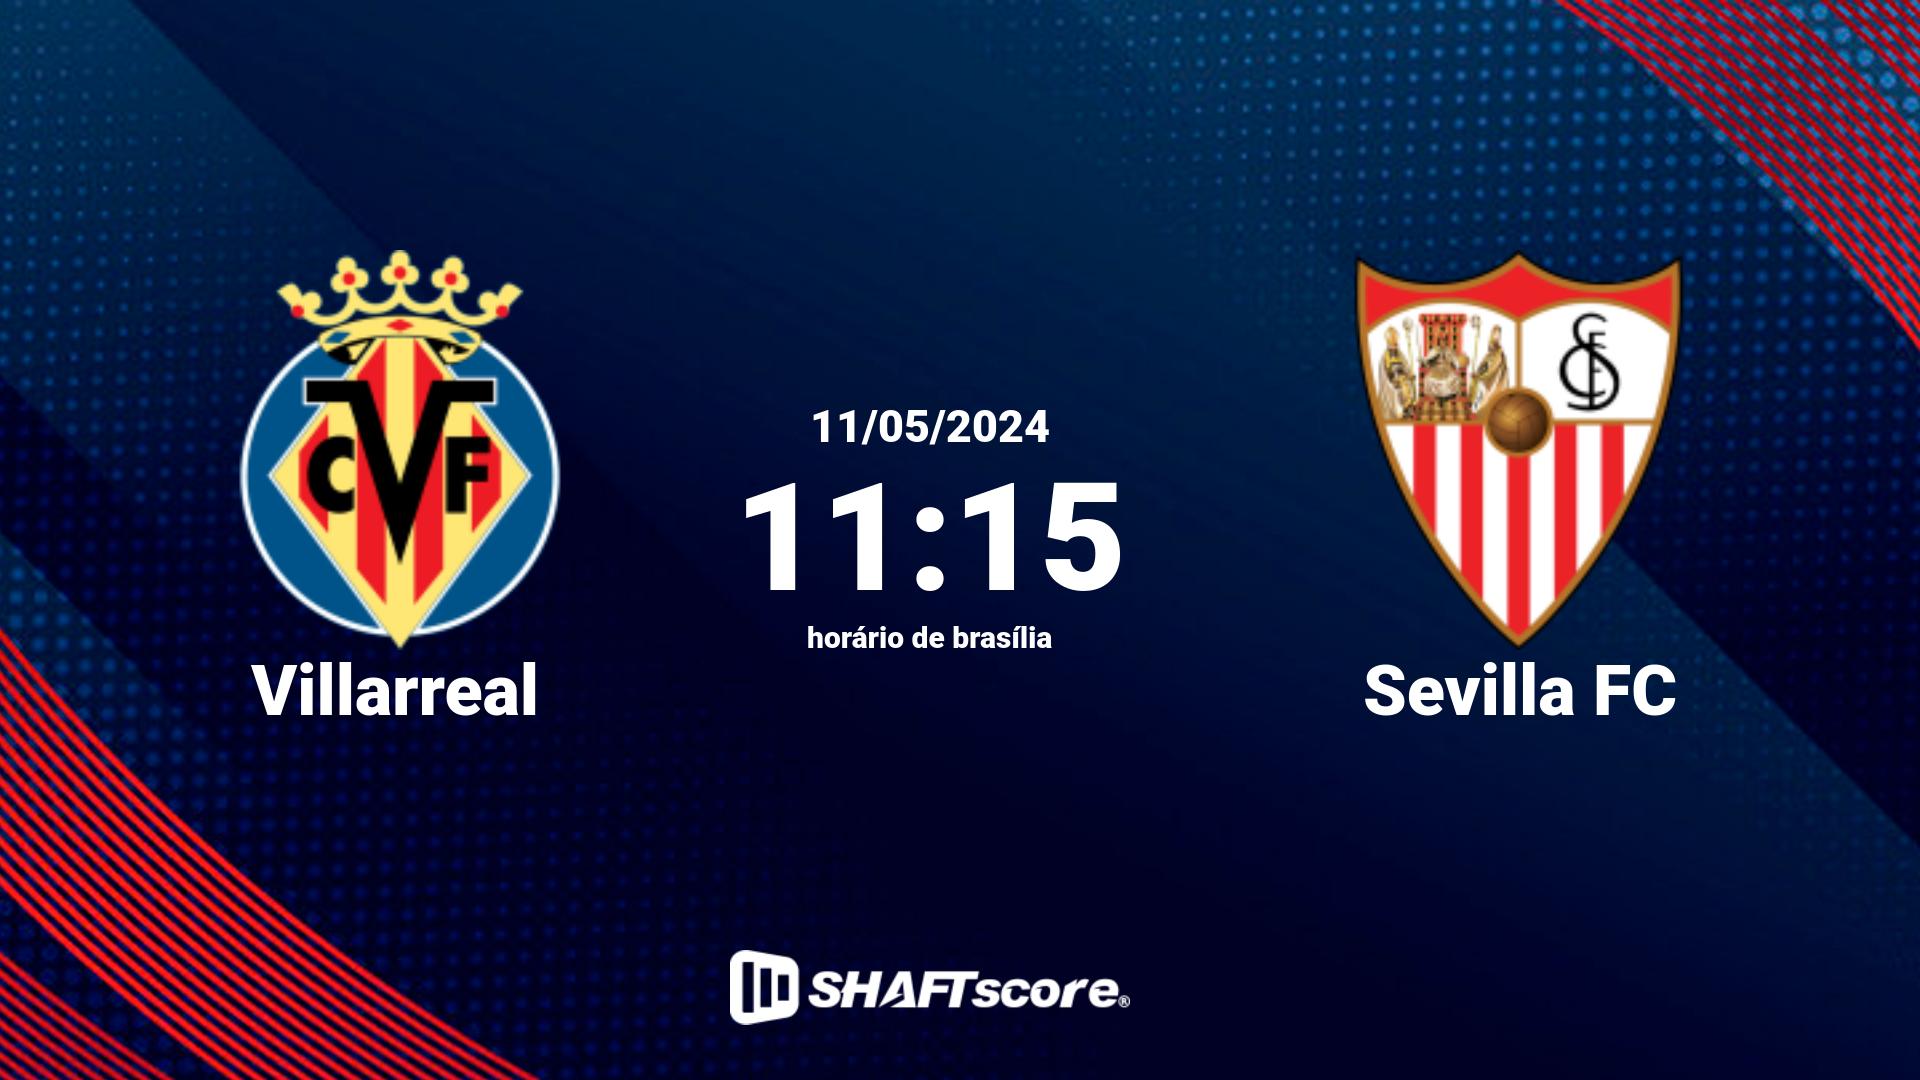 Estatísticas do jogo Villarreal vs Sevilla FC 11.05 11:15